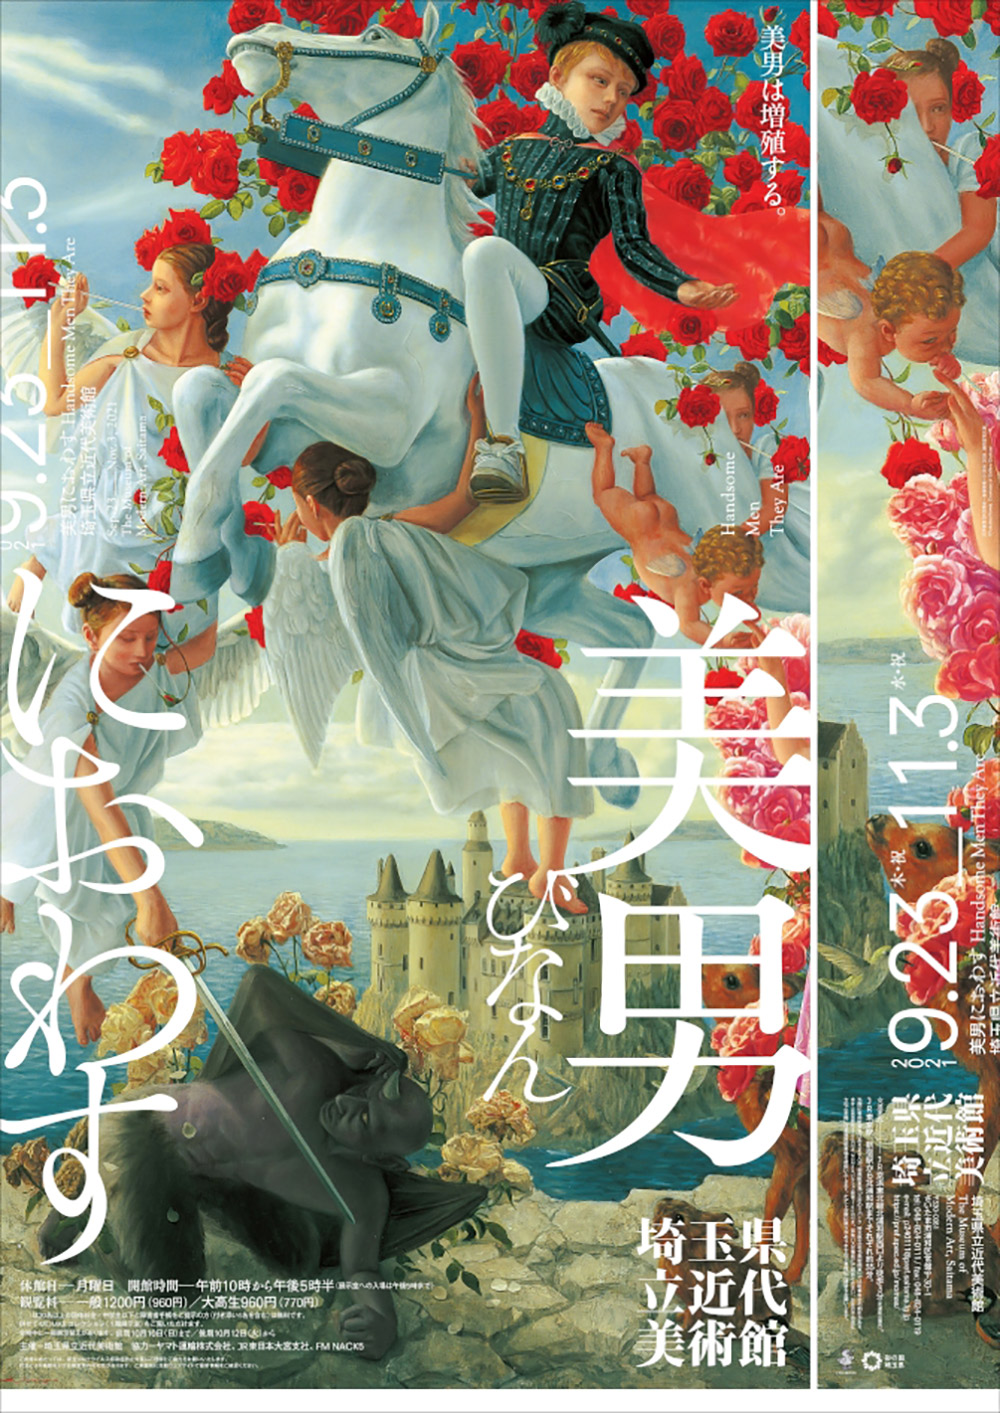 12张耐看的日本展览海报